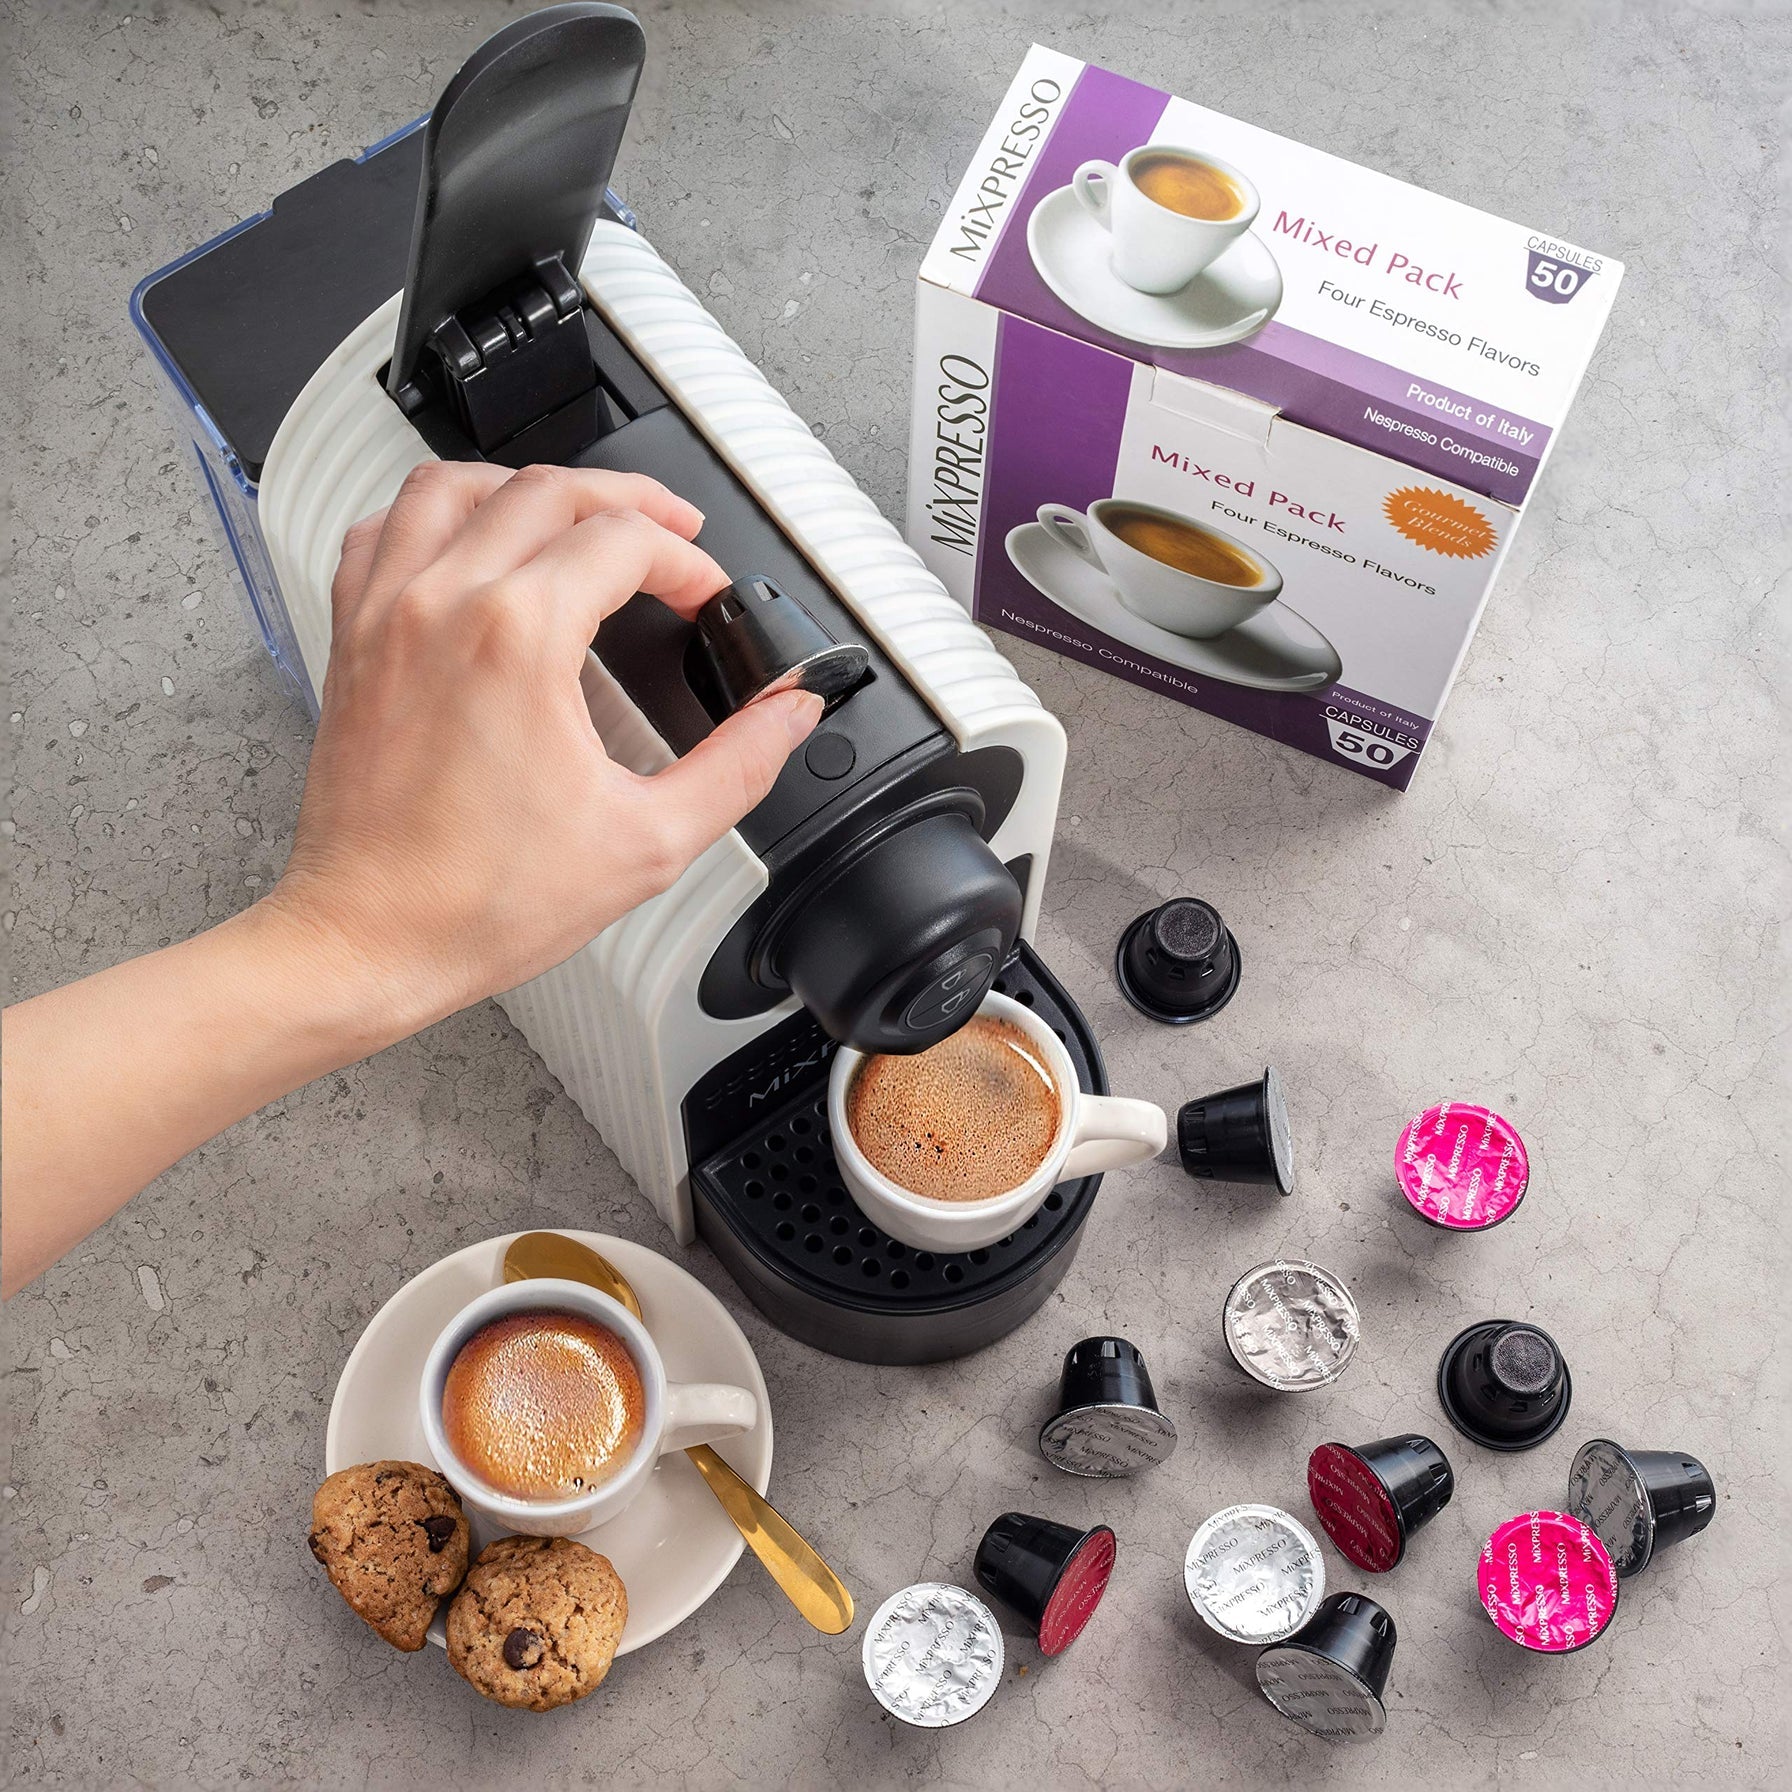 Mixpresso Espresso Machine for Respresso Compatible Capsule, Single Se –  Delizioso Gourmet